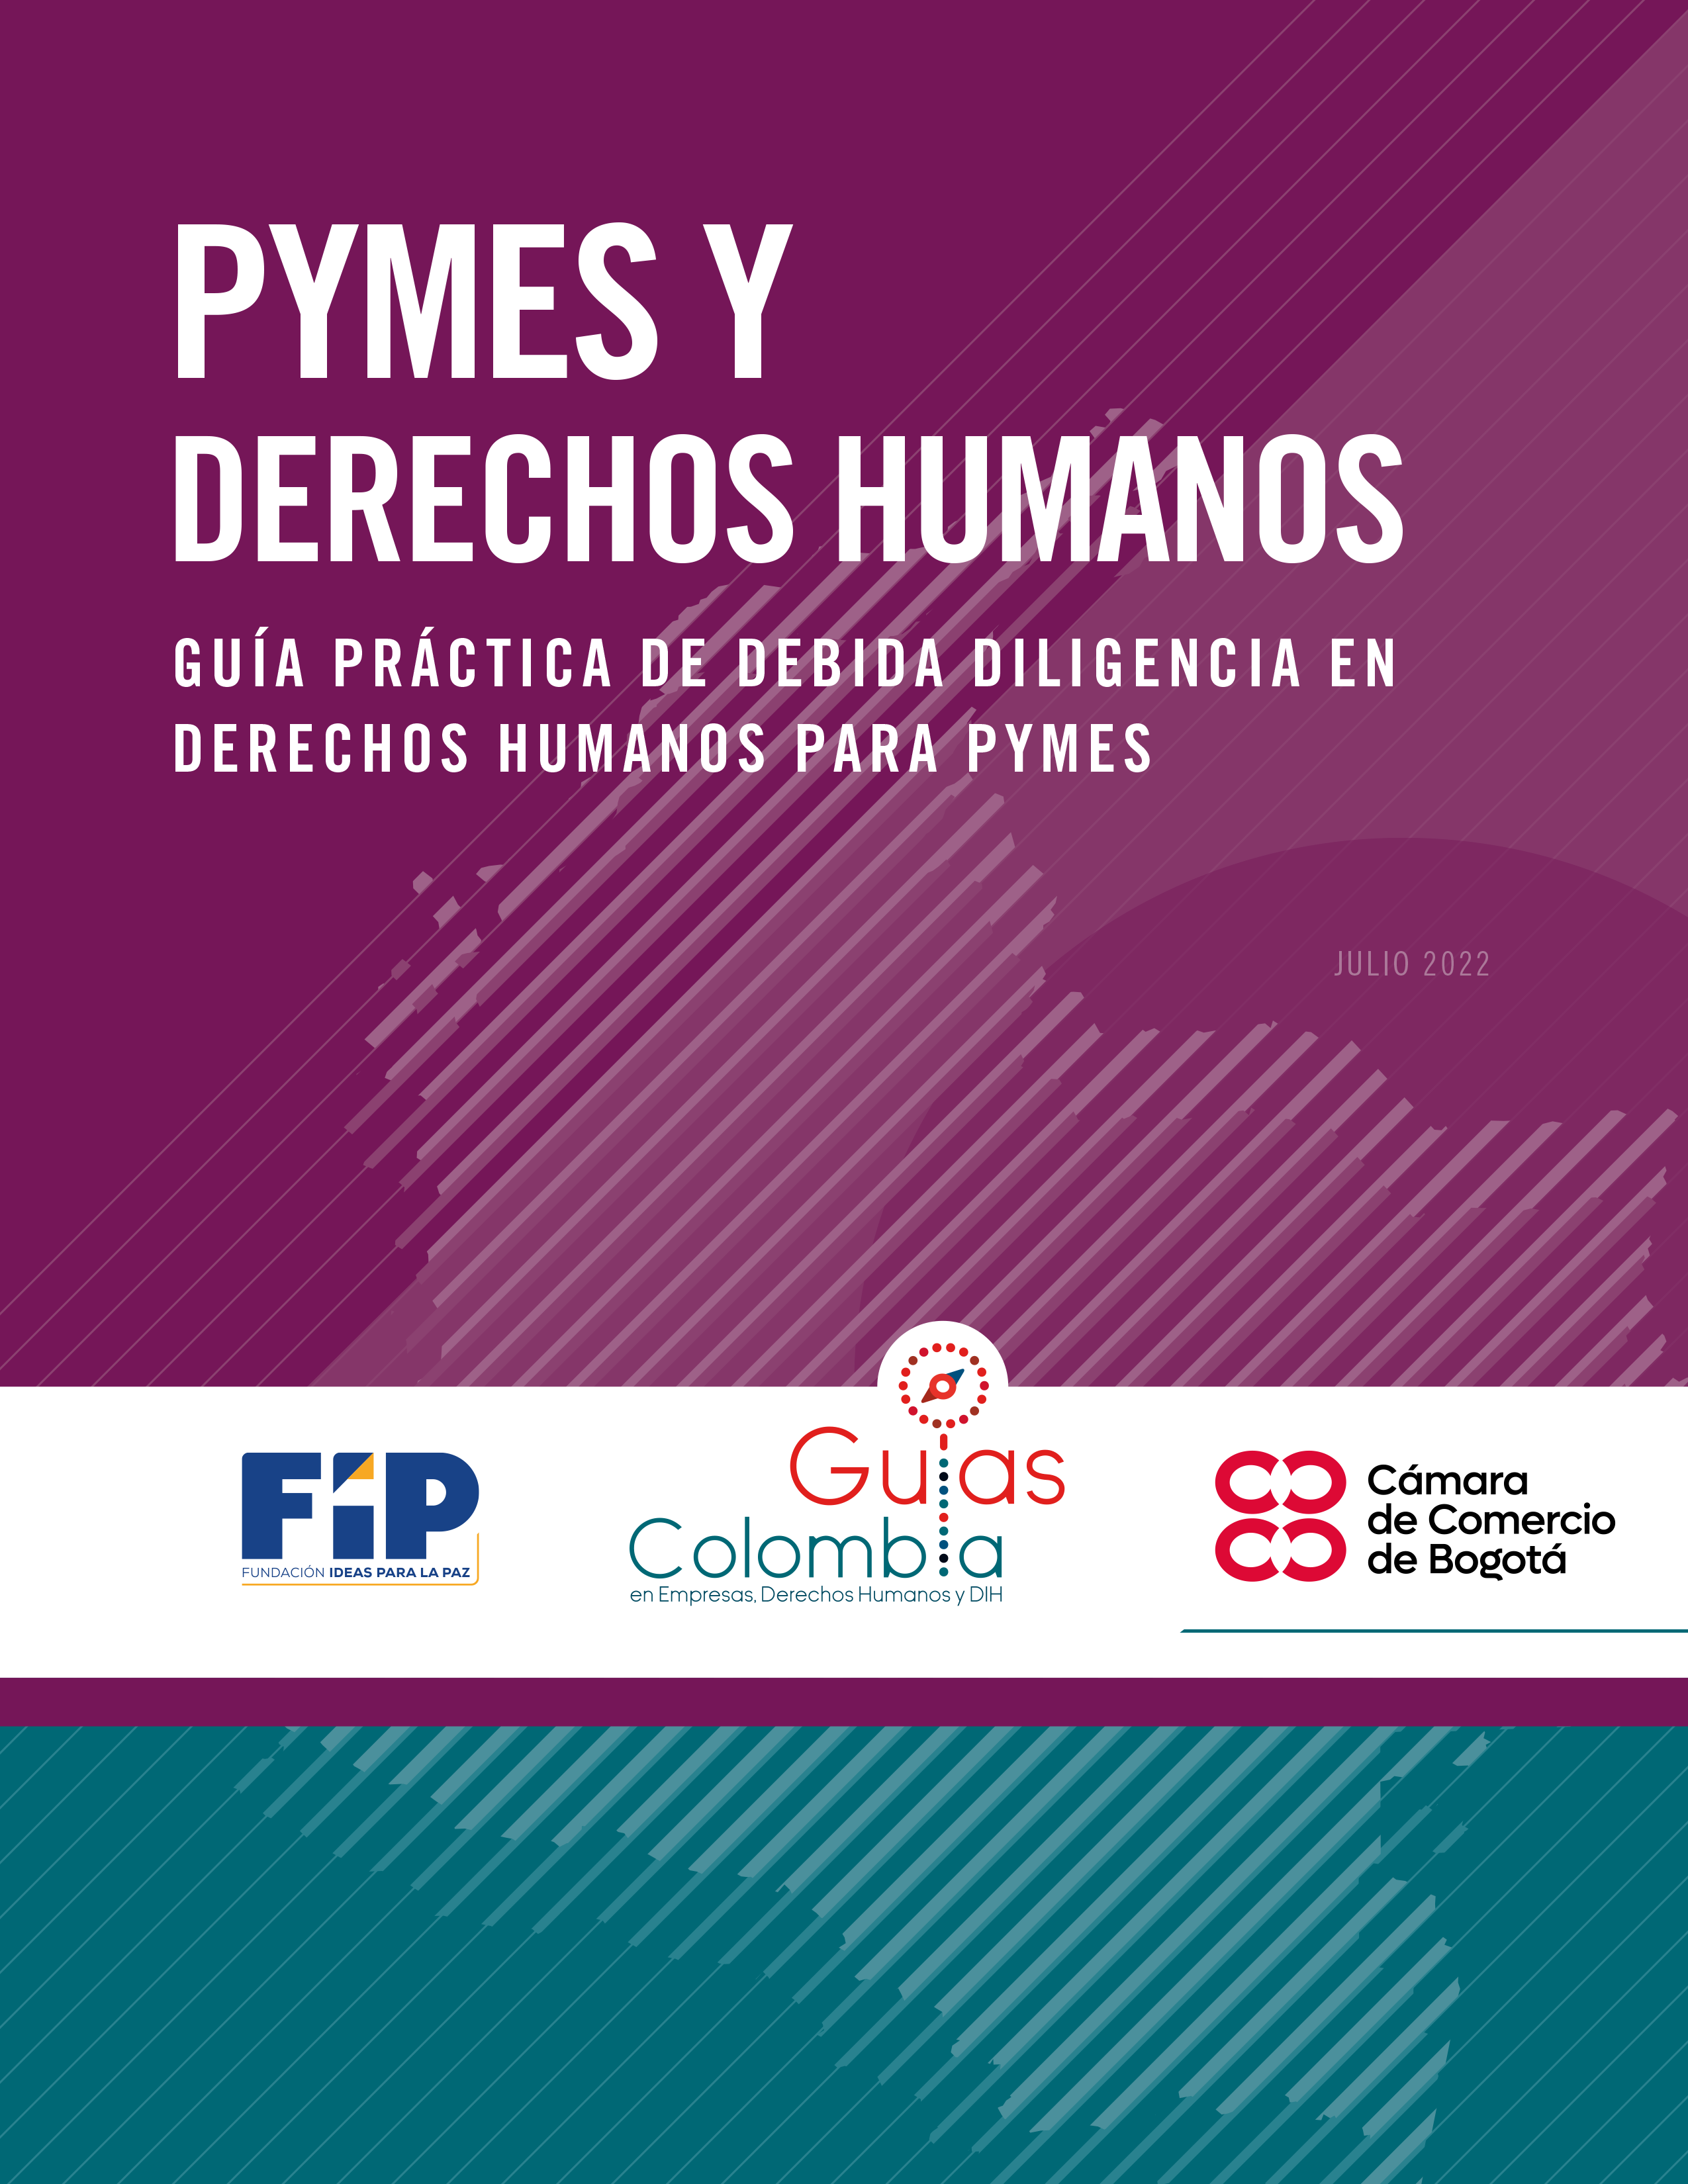 Guía Práctica de Debida Diligencia Empresarial en Derechos Humanos para pymes